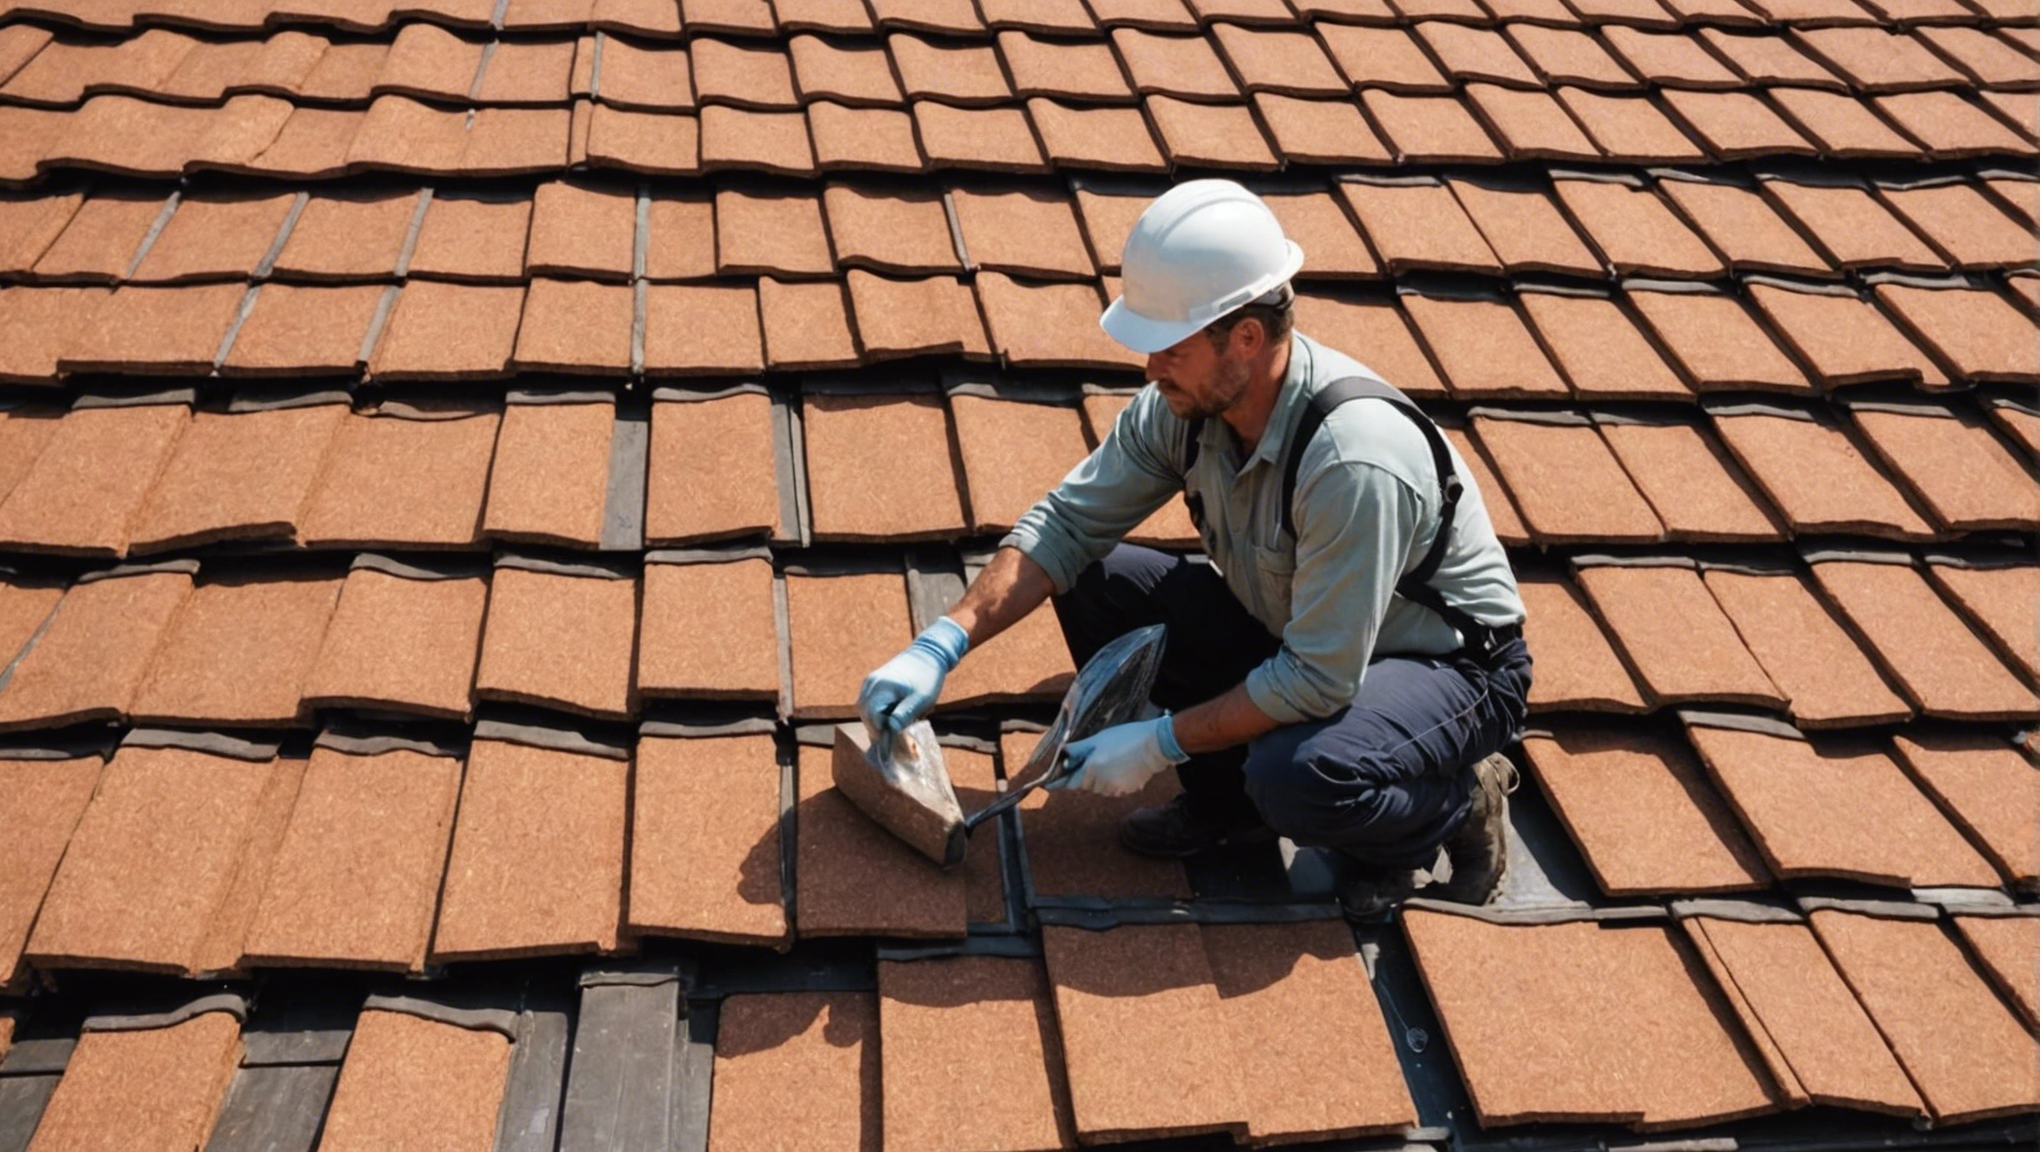 découvrez nos conseils pour assurer l'entretien de l'isolation de toiture afin d'optimiser le confort de votre habitation. astuces et solutions pratiques sont à votre disposition !